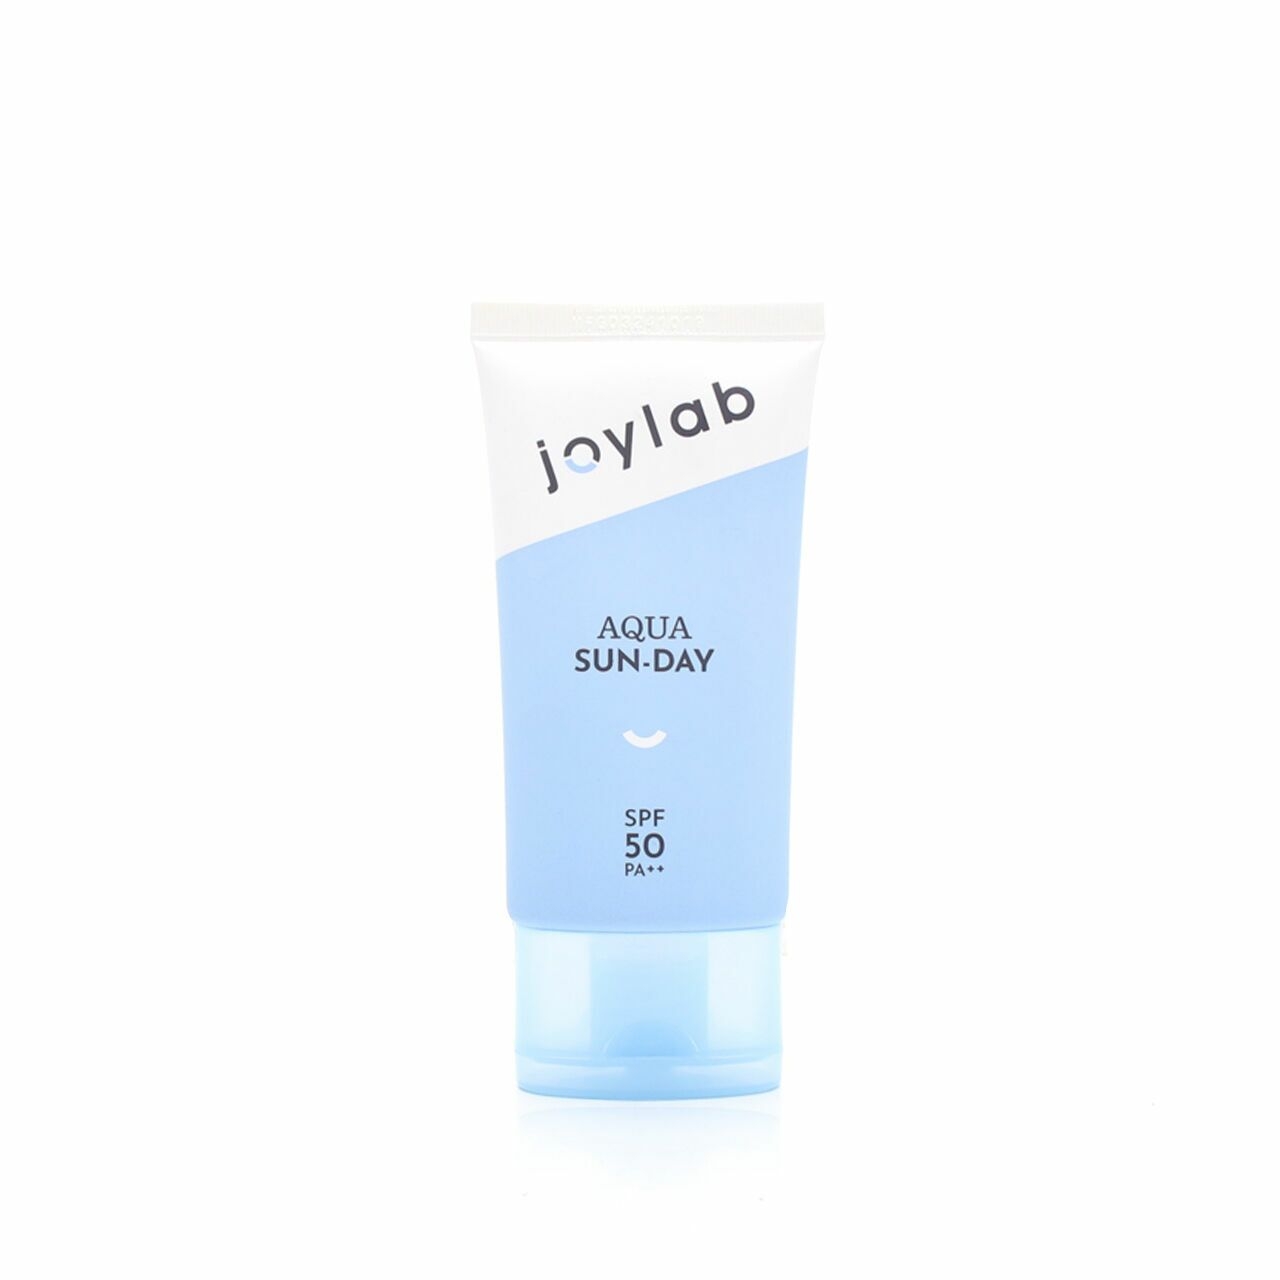 Joylab Aqua Sun-day  Skin Care